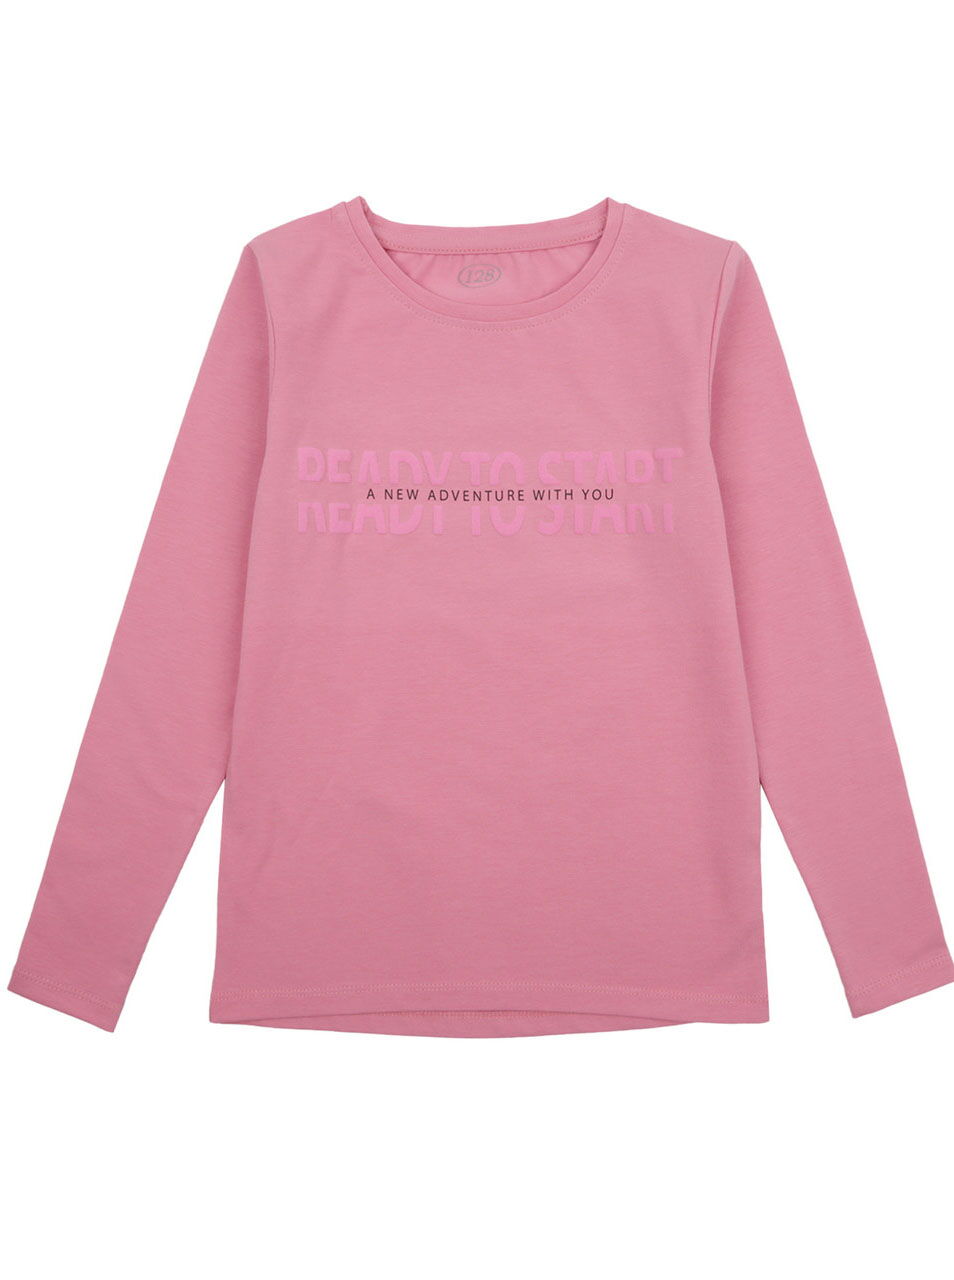 Реглан для девочки Фламинго Ready to start темно-розовый 998-416 - цена